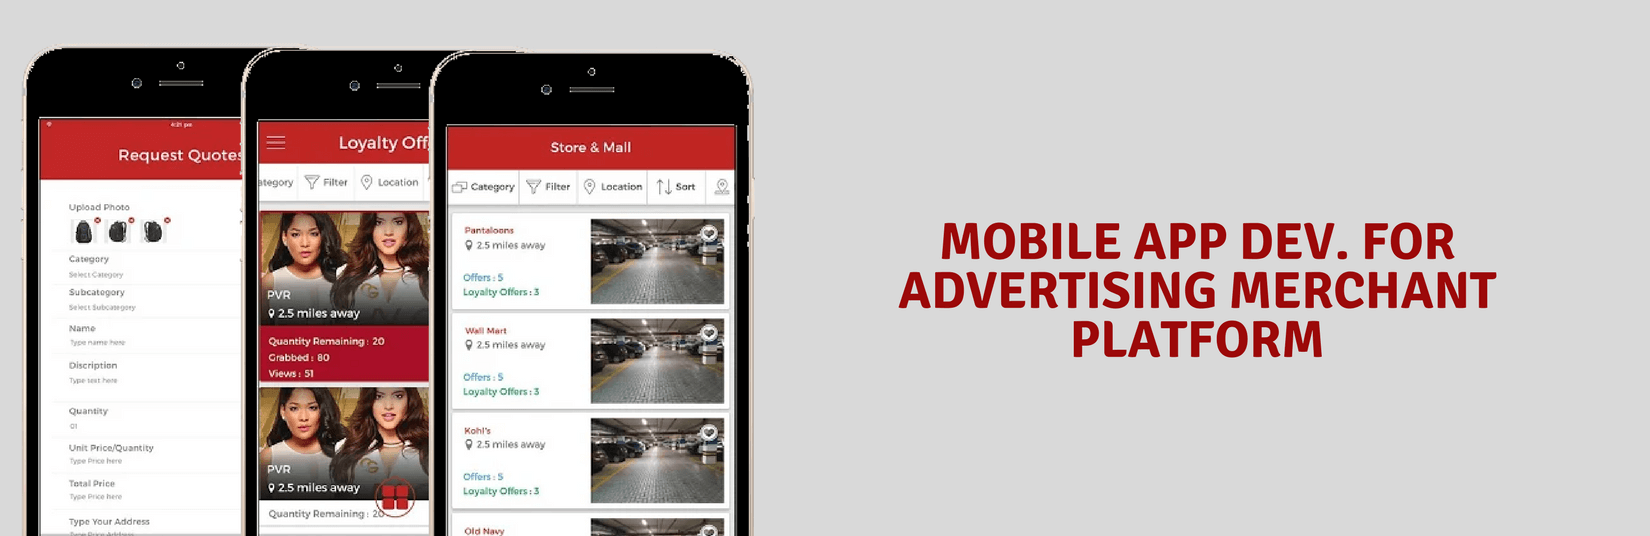 Mobile App Development for Advertising Merchant